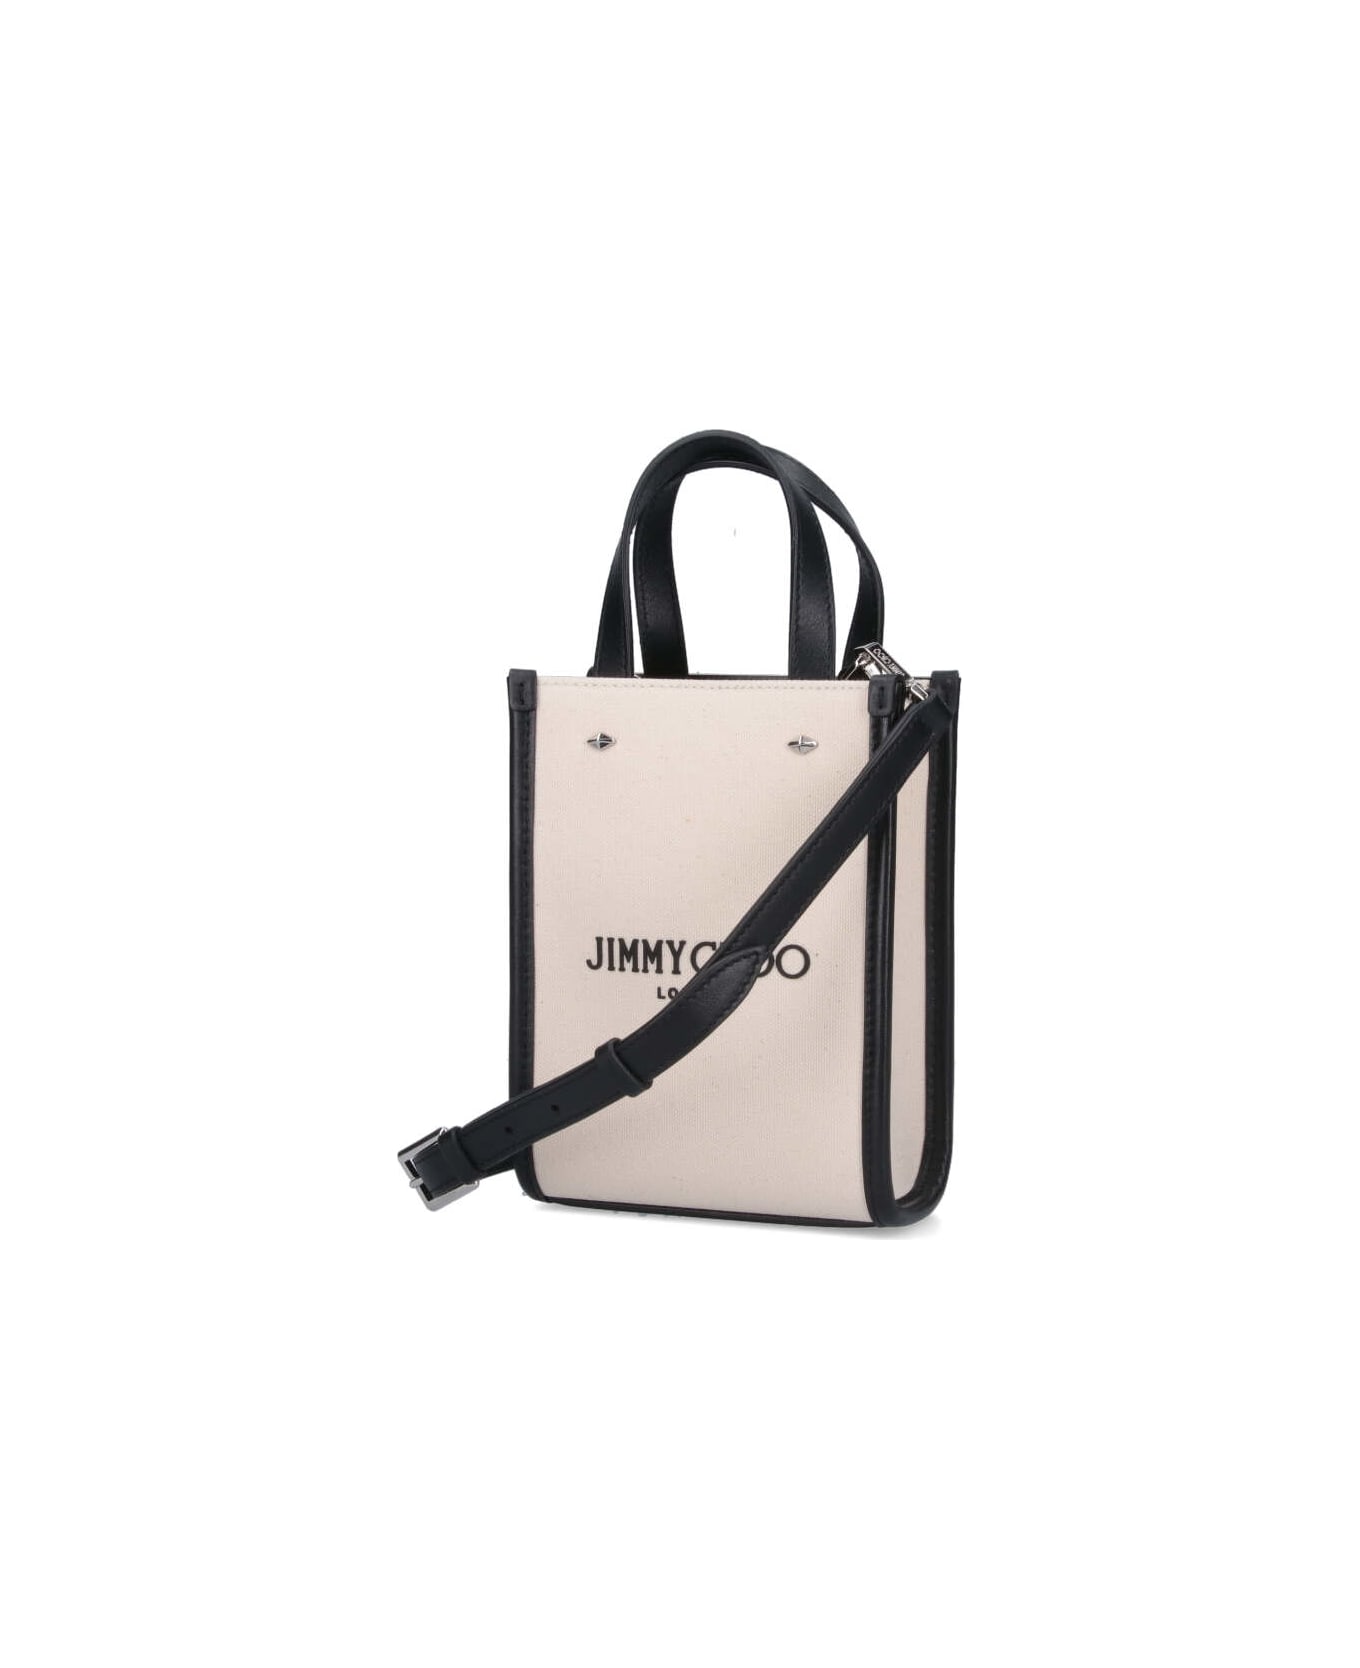 Jimmy Choo N/s Mini Tote Bag - Crema